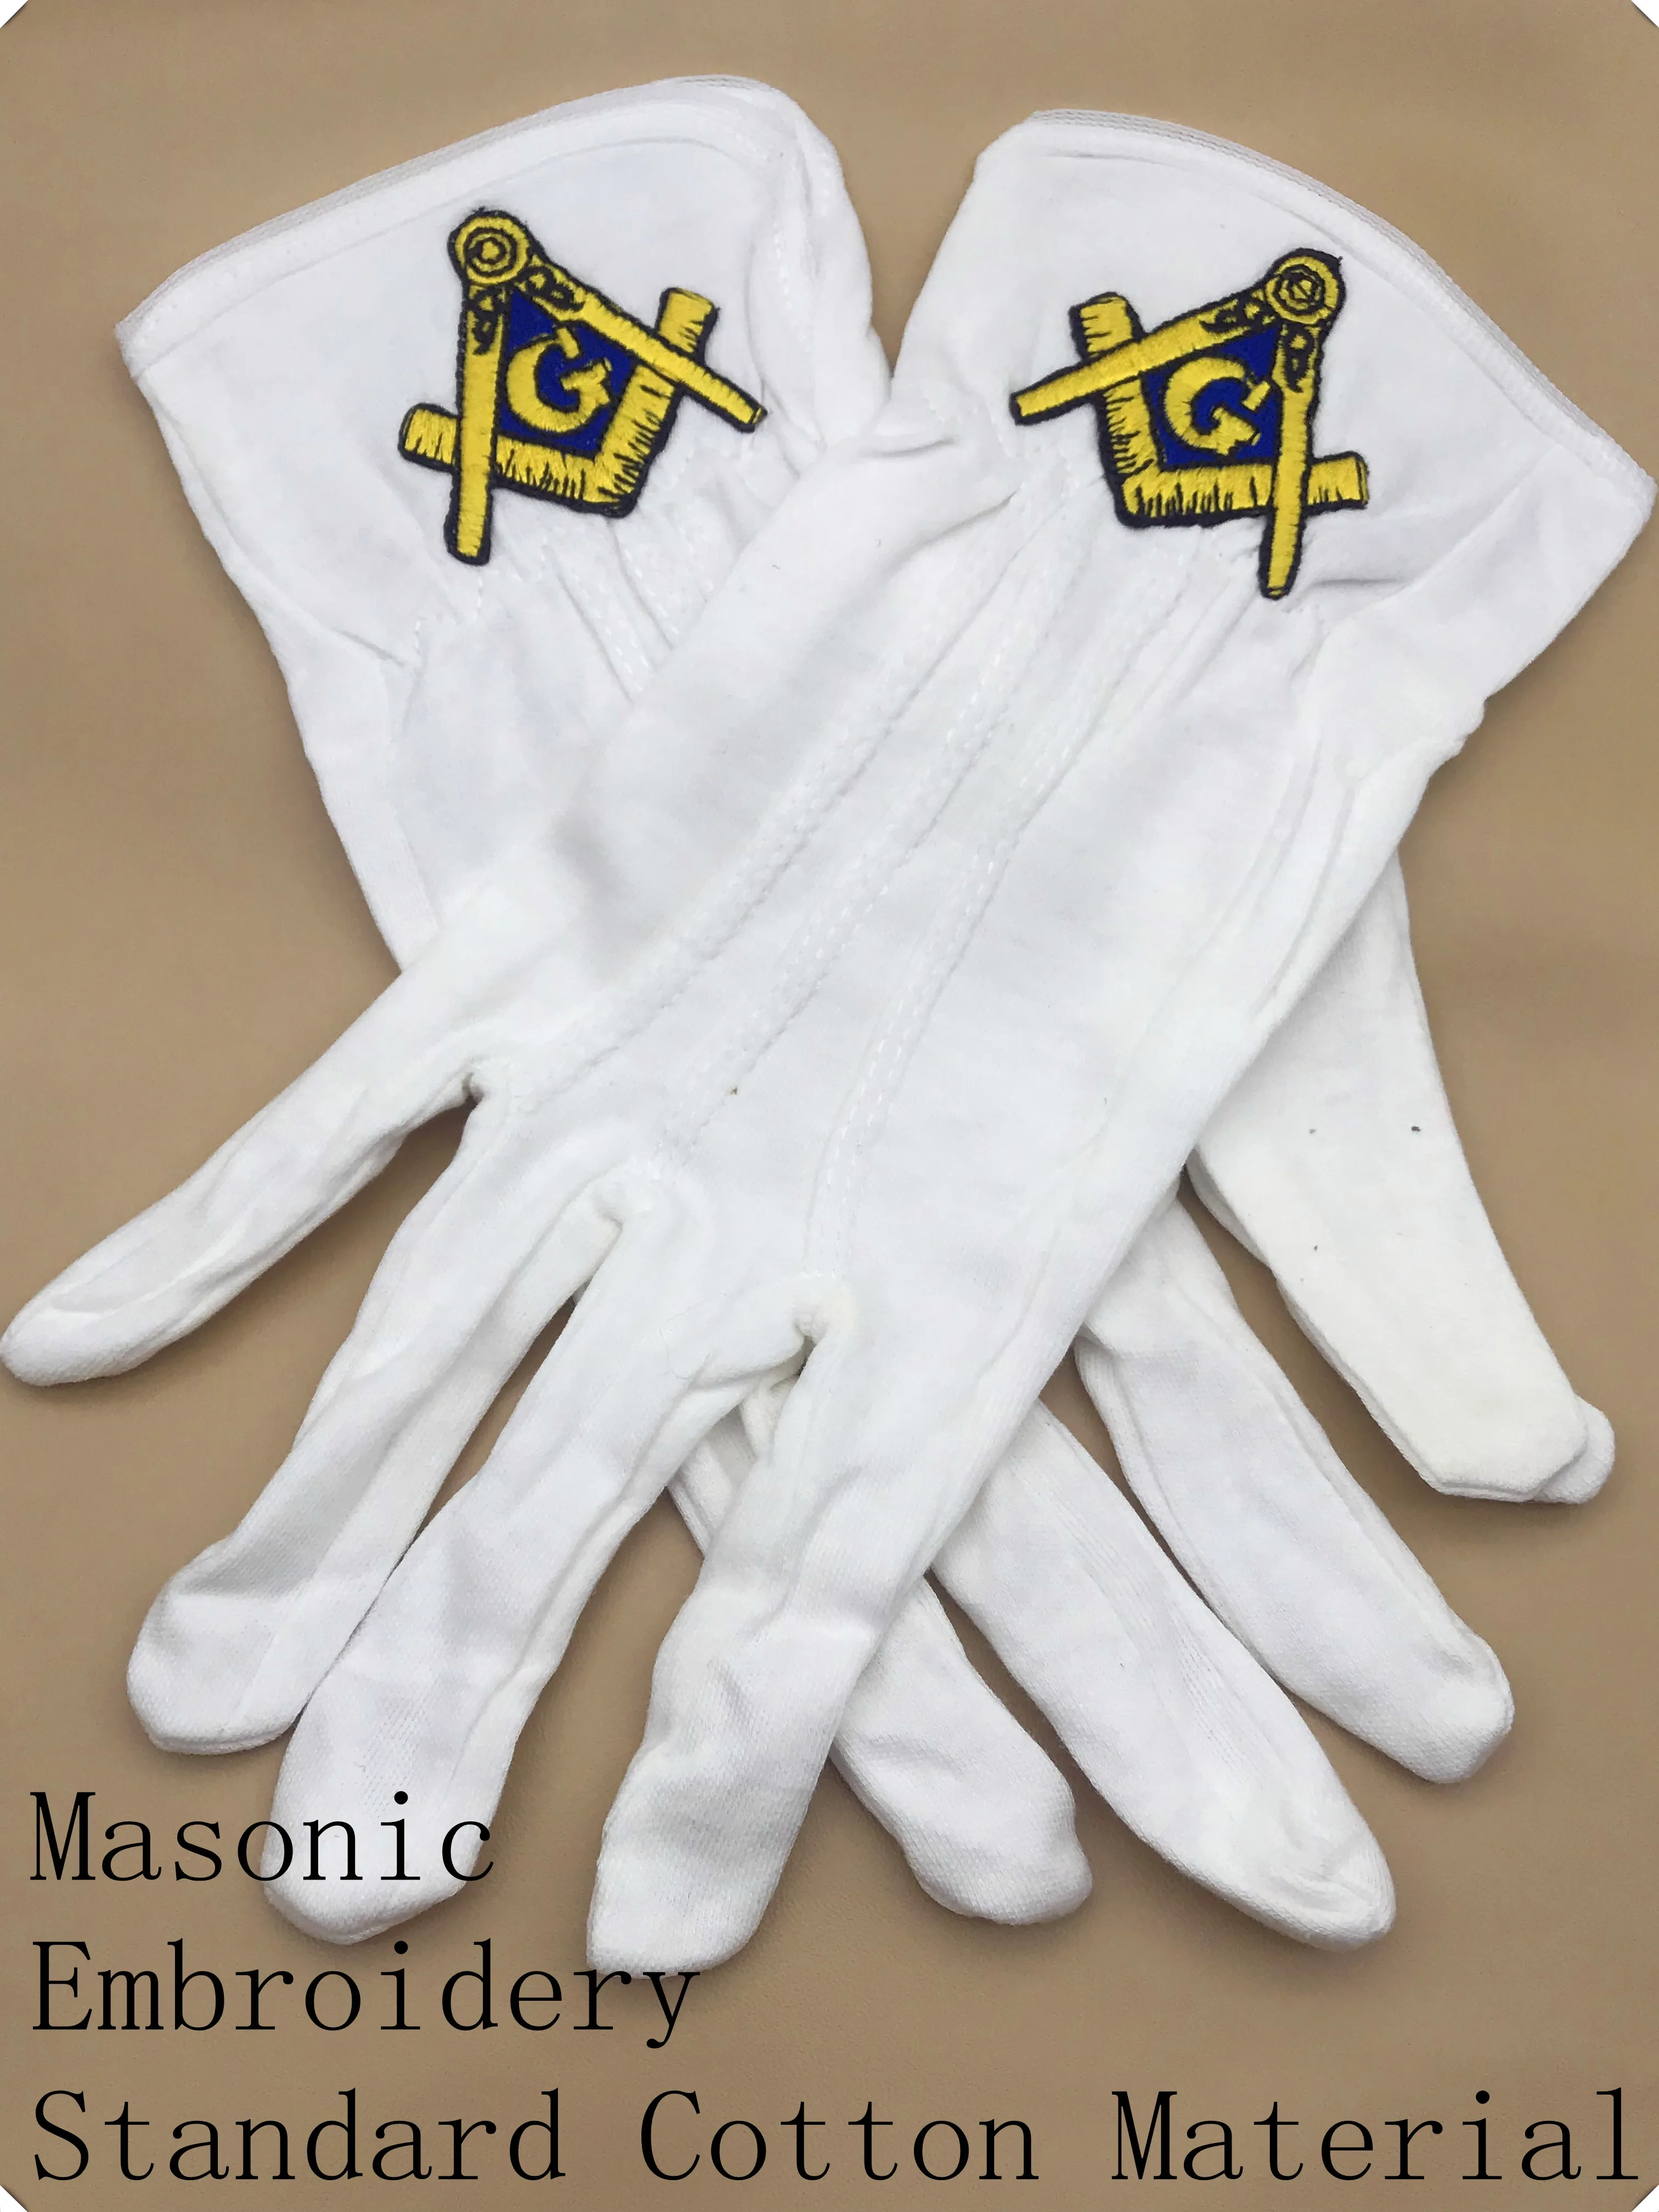 Масонская регалия/масонская хлопковая перчатка с голубым вышитым логотипом квадрата и компаса